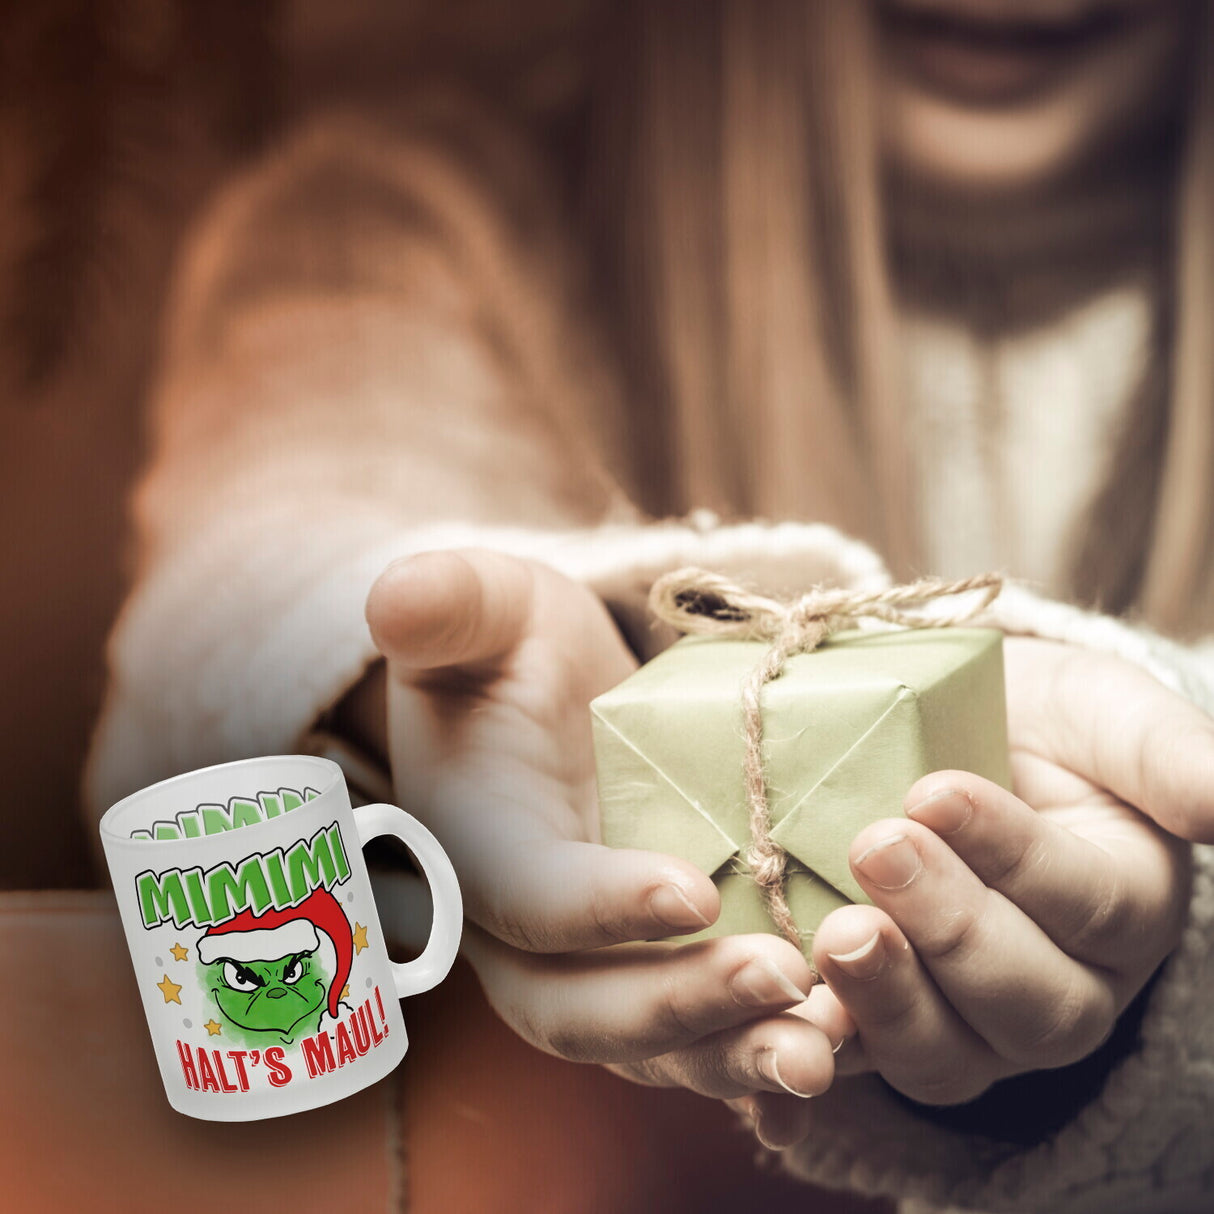 Mimimi Weihnachtsmuffel Kaffeebecher mit Spruch Halt's Maul